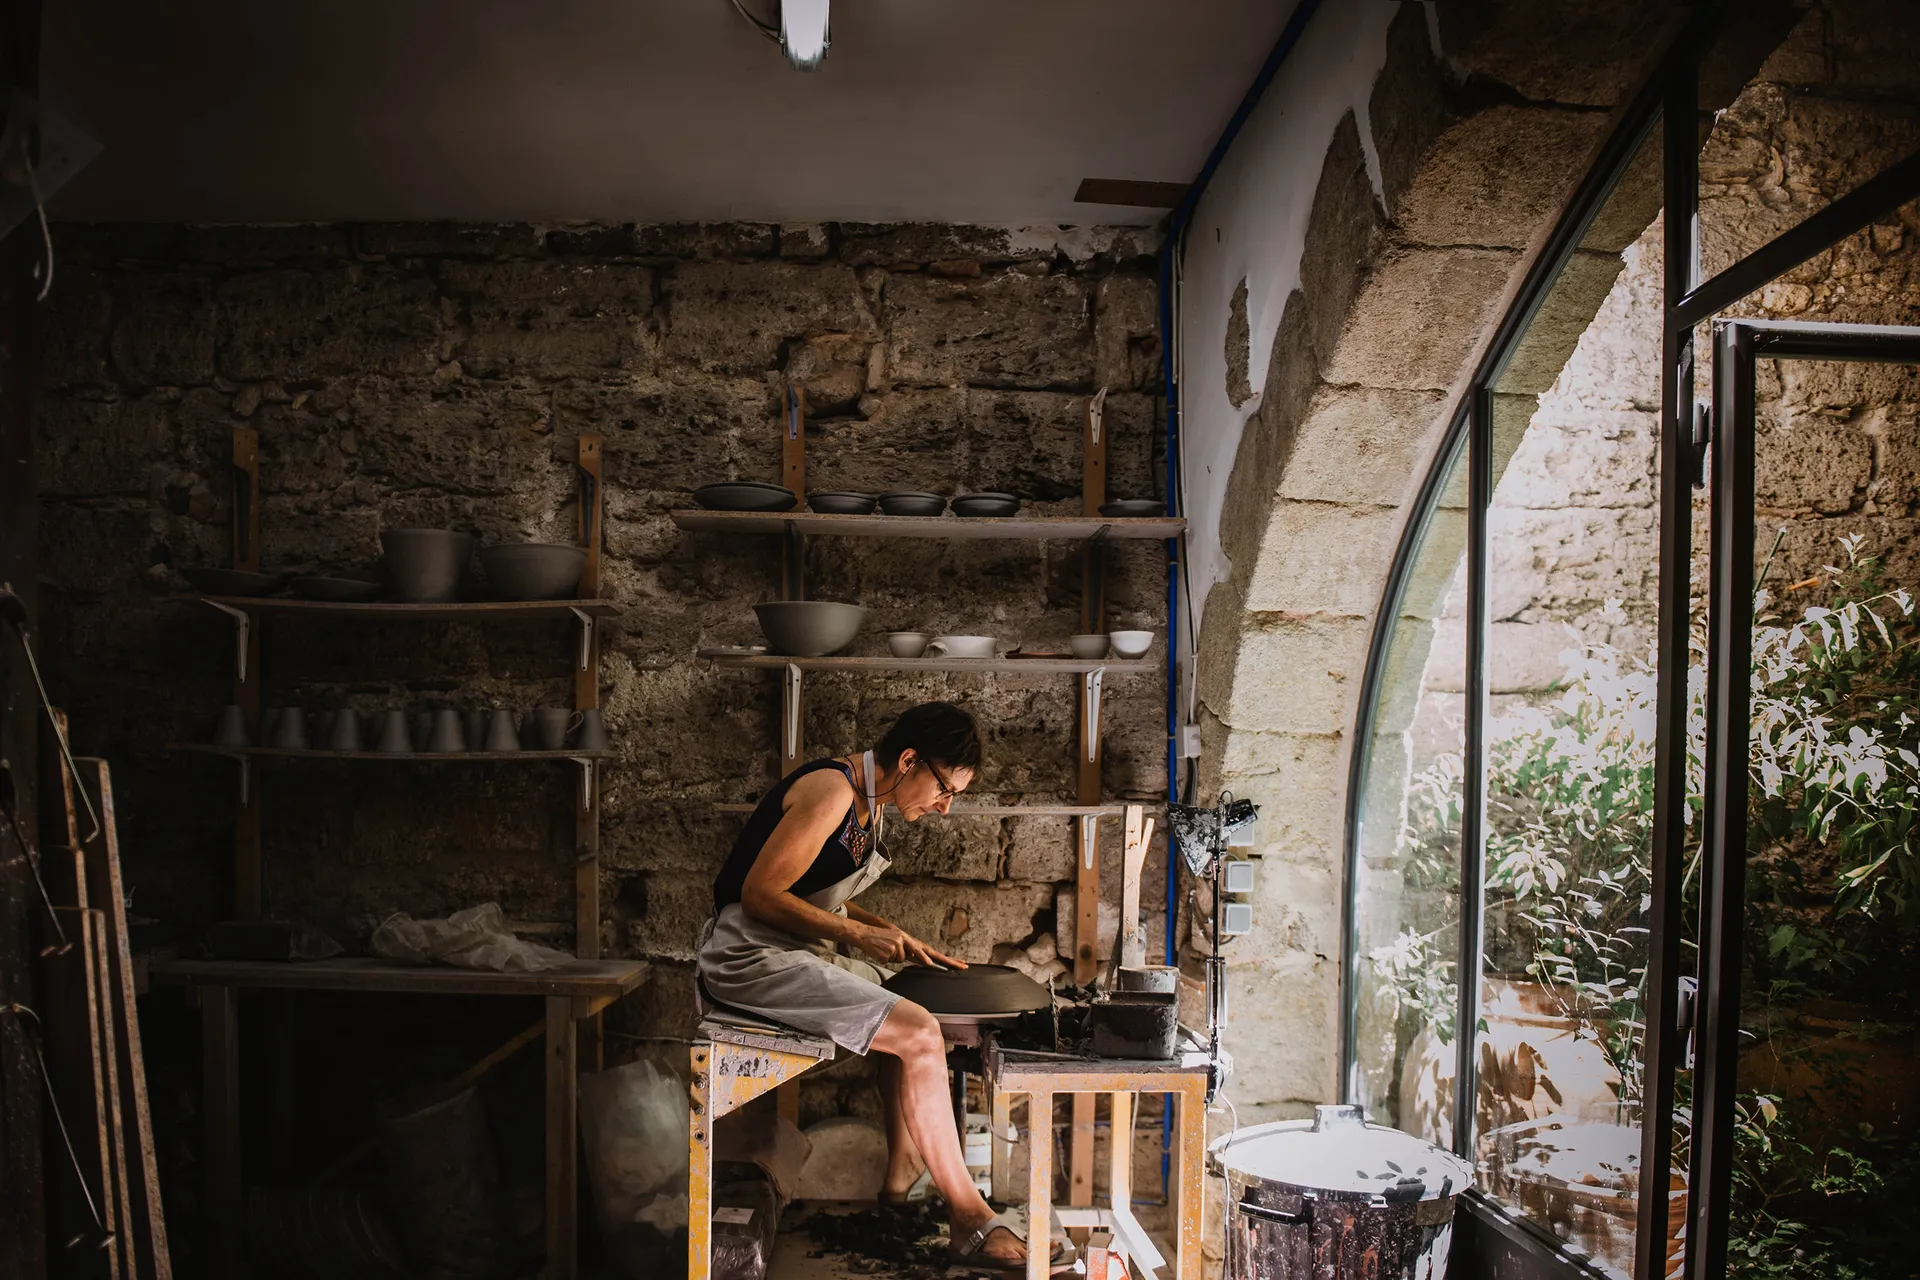 la céramiste travaillant à son tour de poterie au milieu de son atelier